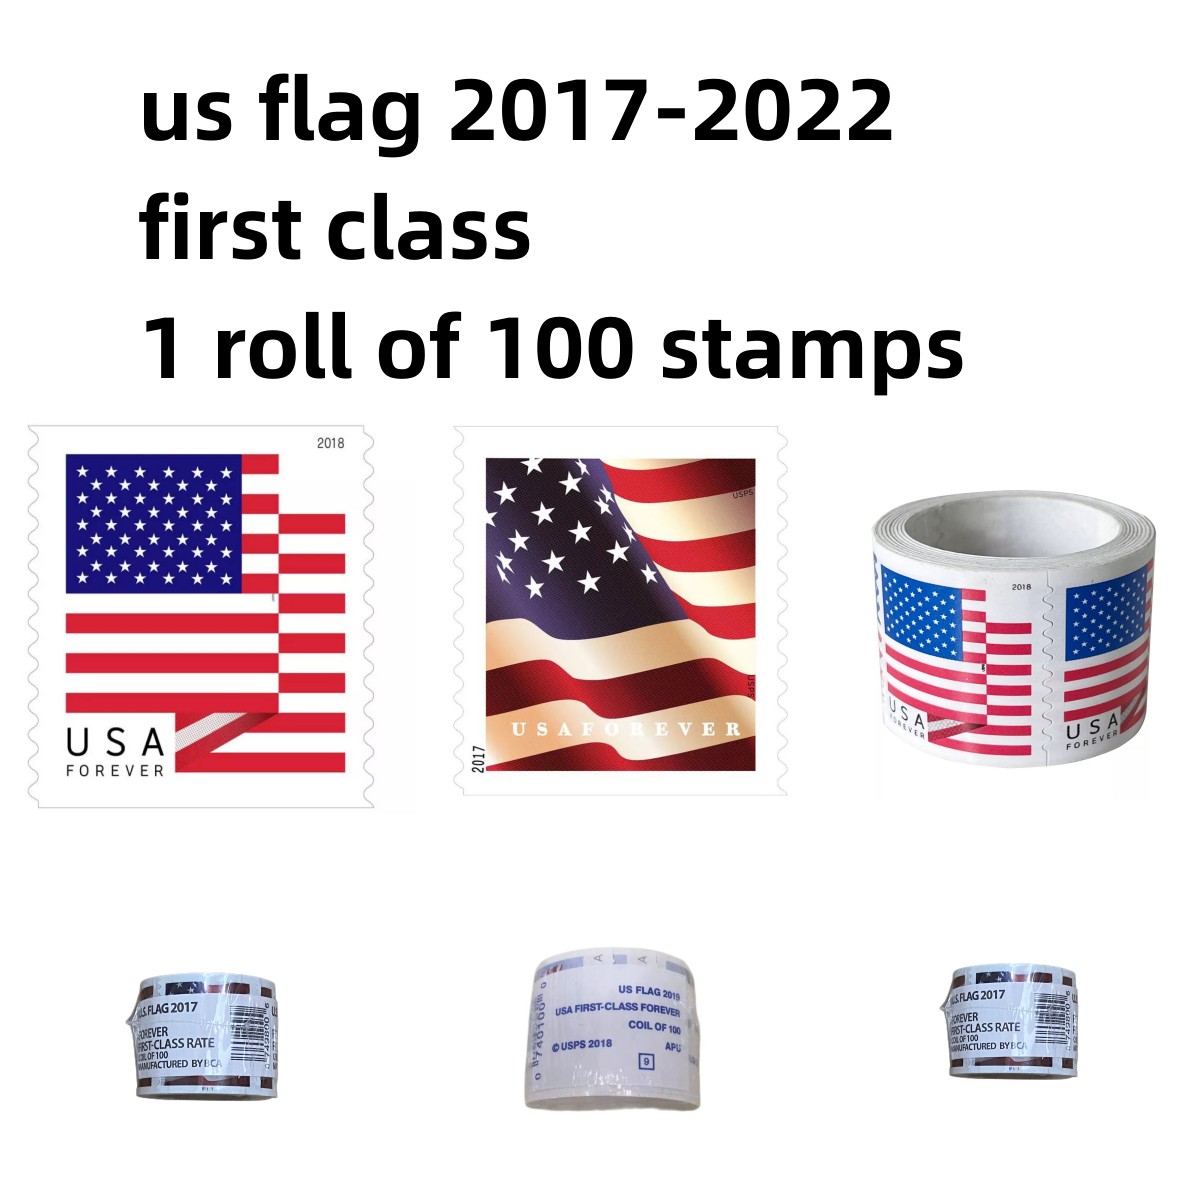 2022 Autocollant US Flag USA Postal Stamp First Class Mail pour les ￉tats-Unis de service de poste Roll Coil de 100 Invitations de c￩l￩bration de mariage Anniversaires Anniversaires